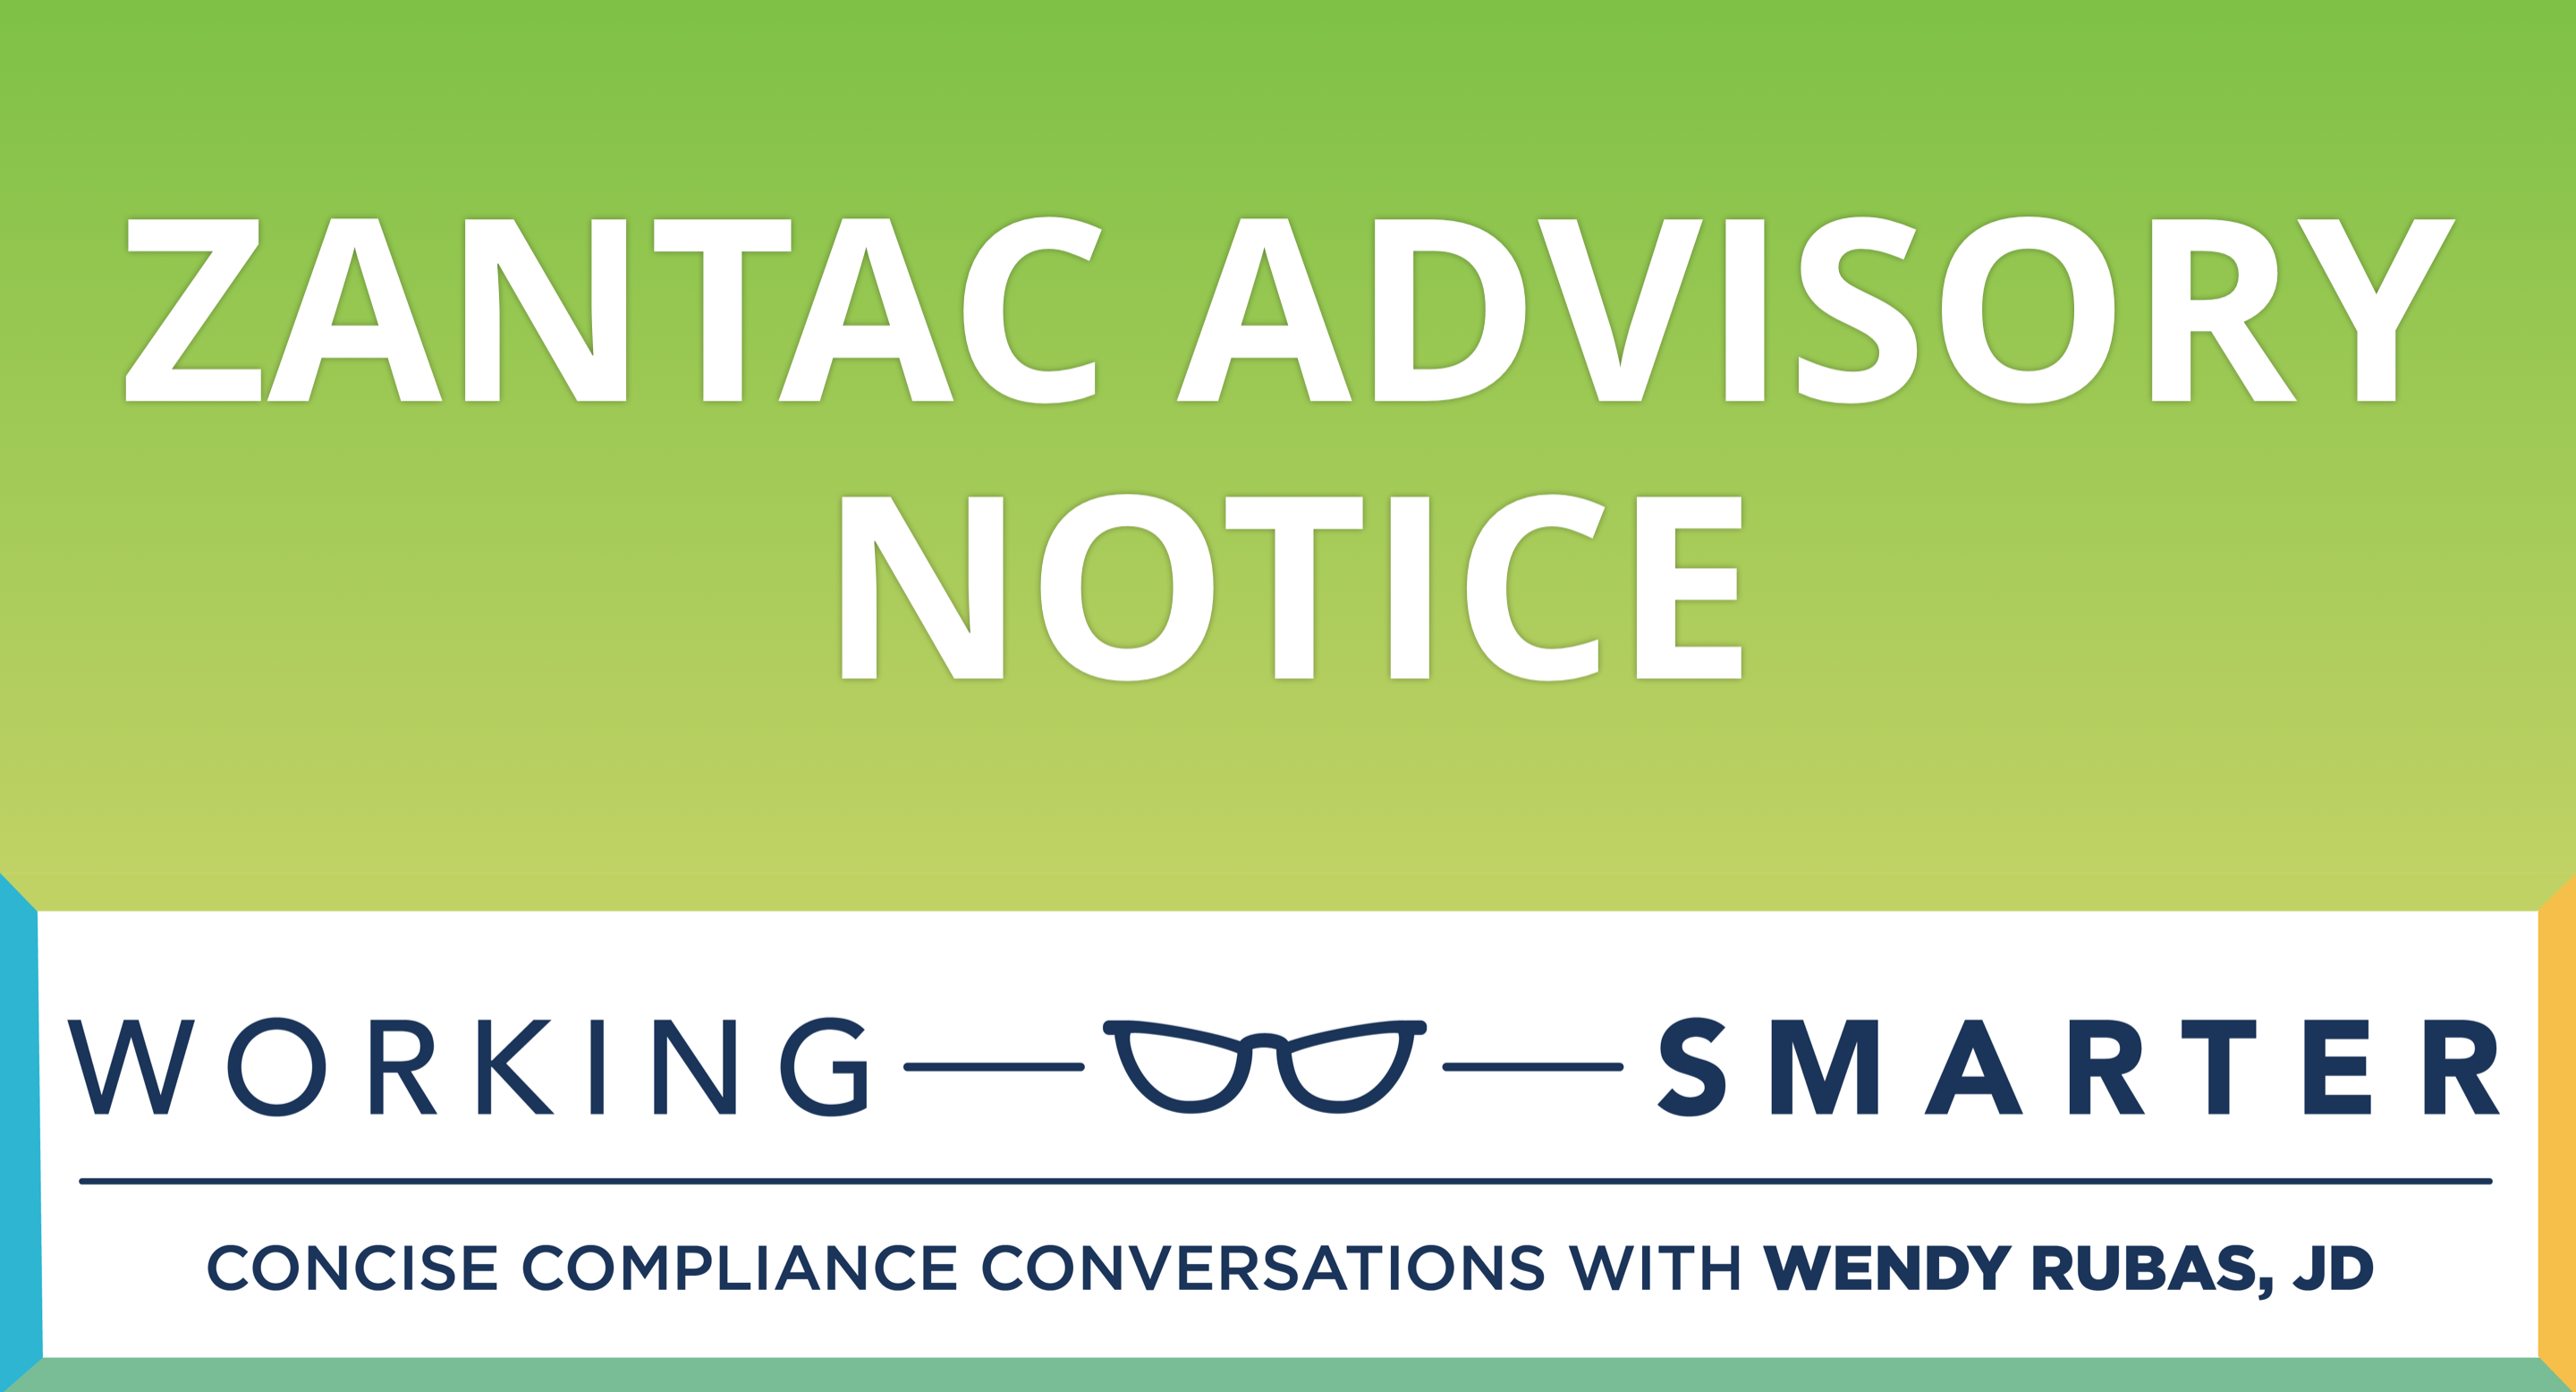 Working Smarter: Zantac Advisory Notice